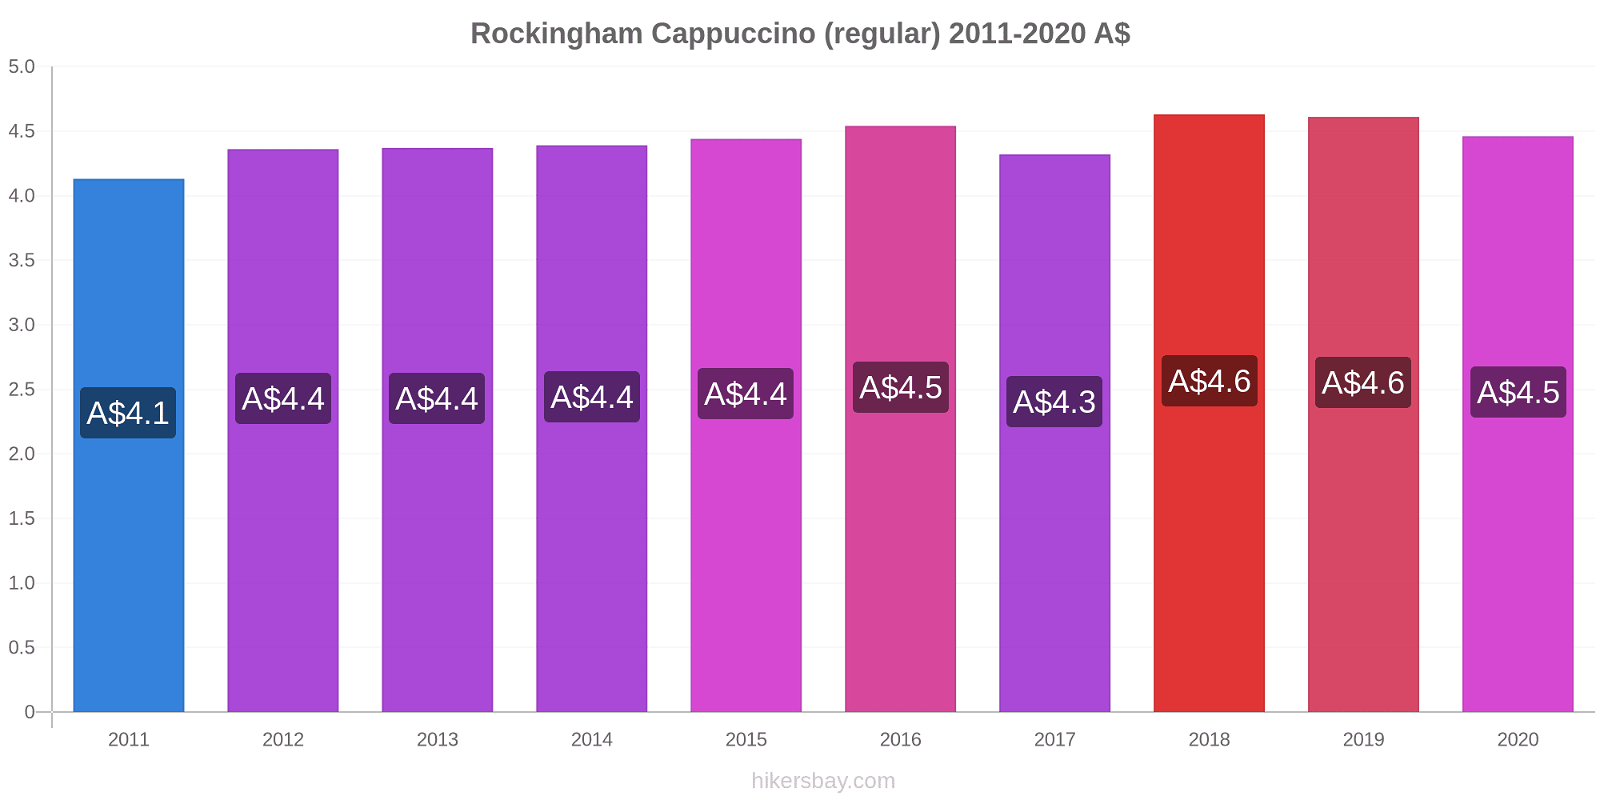 Rockingham price changes Cappuccino (regular) hikersbay.com